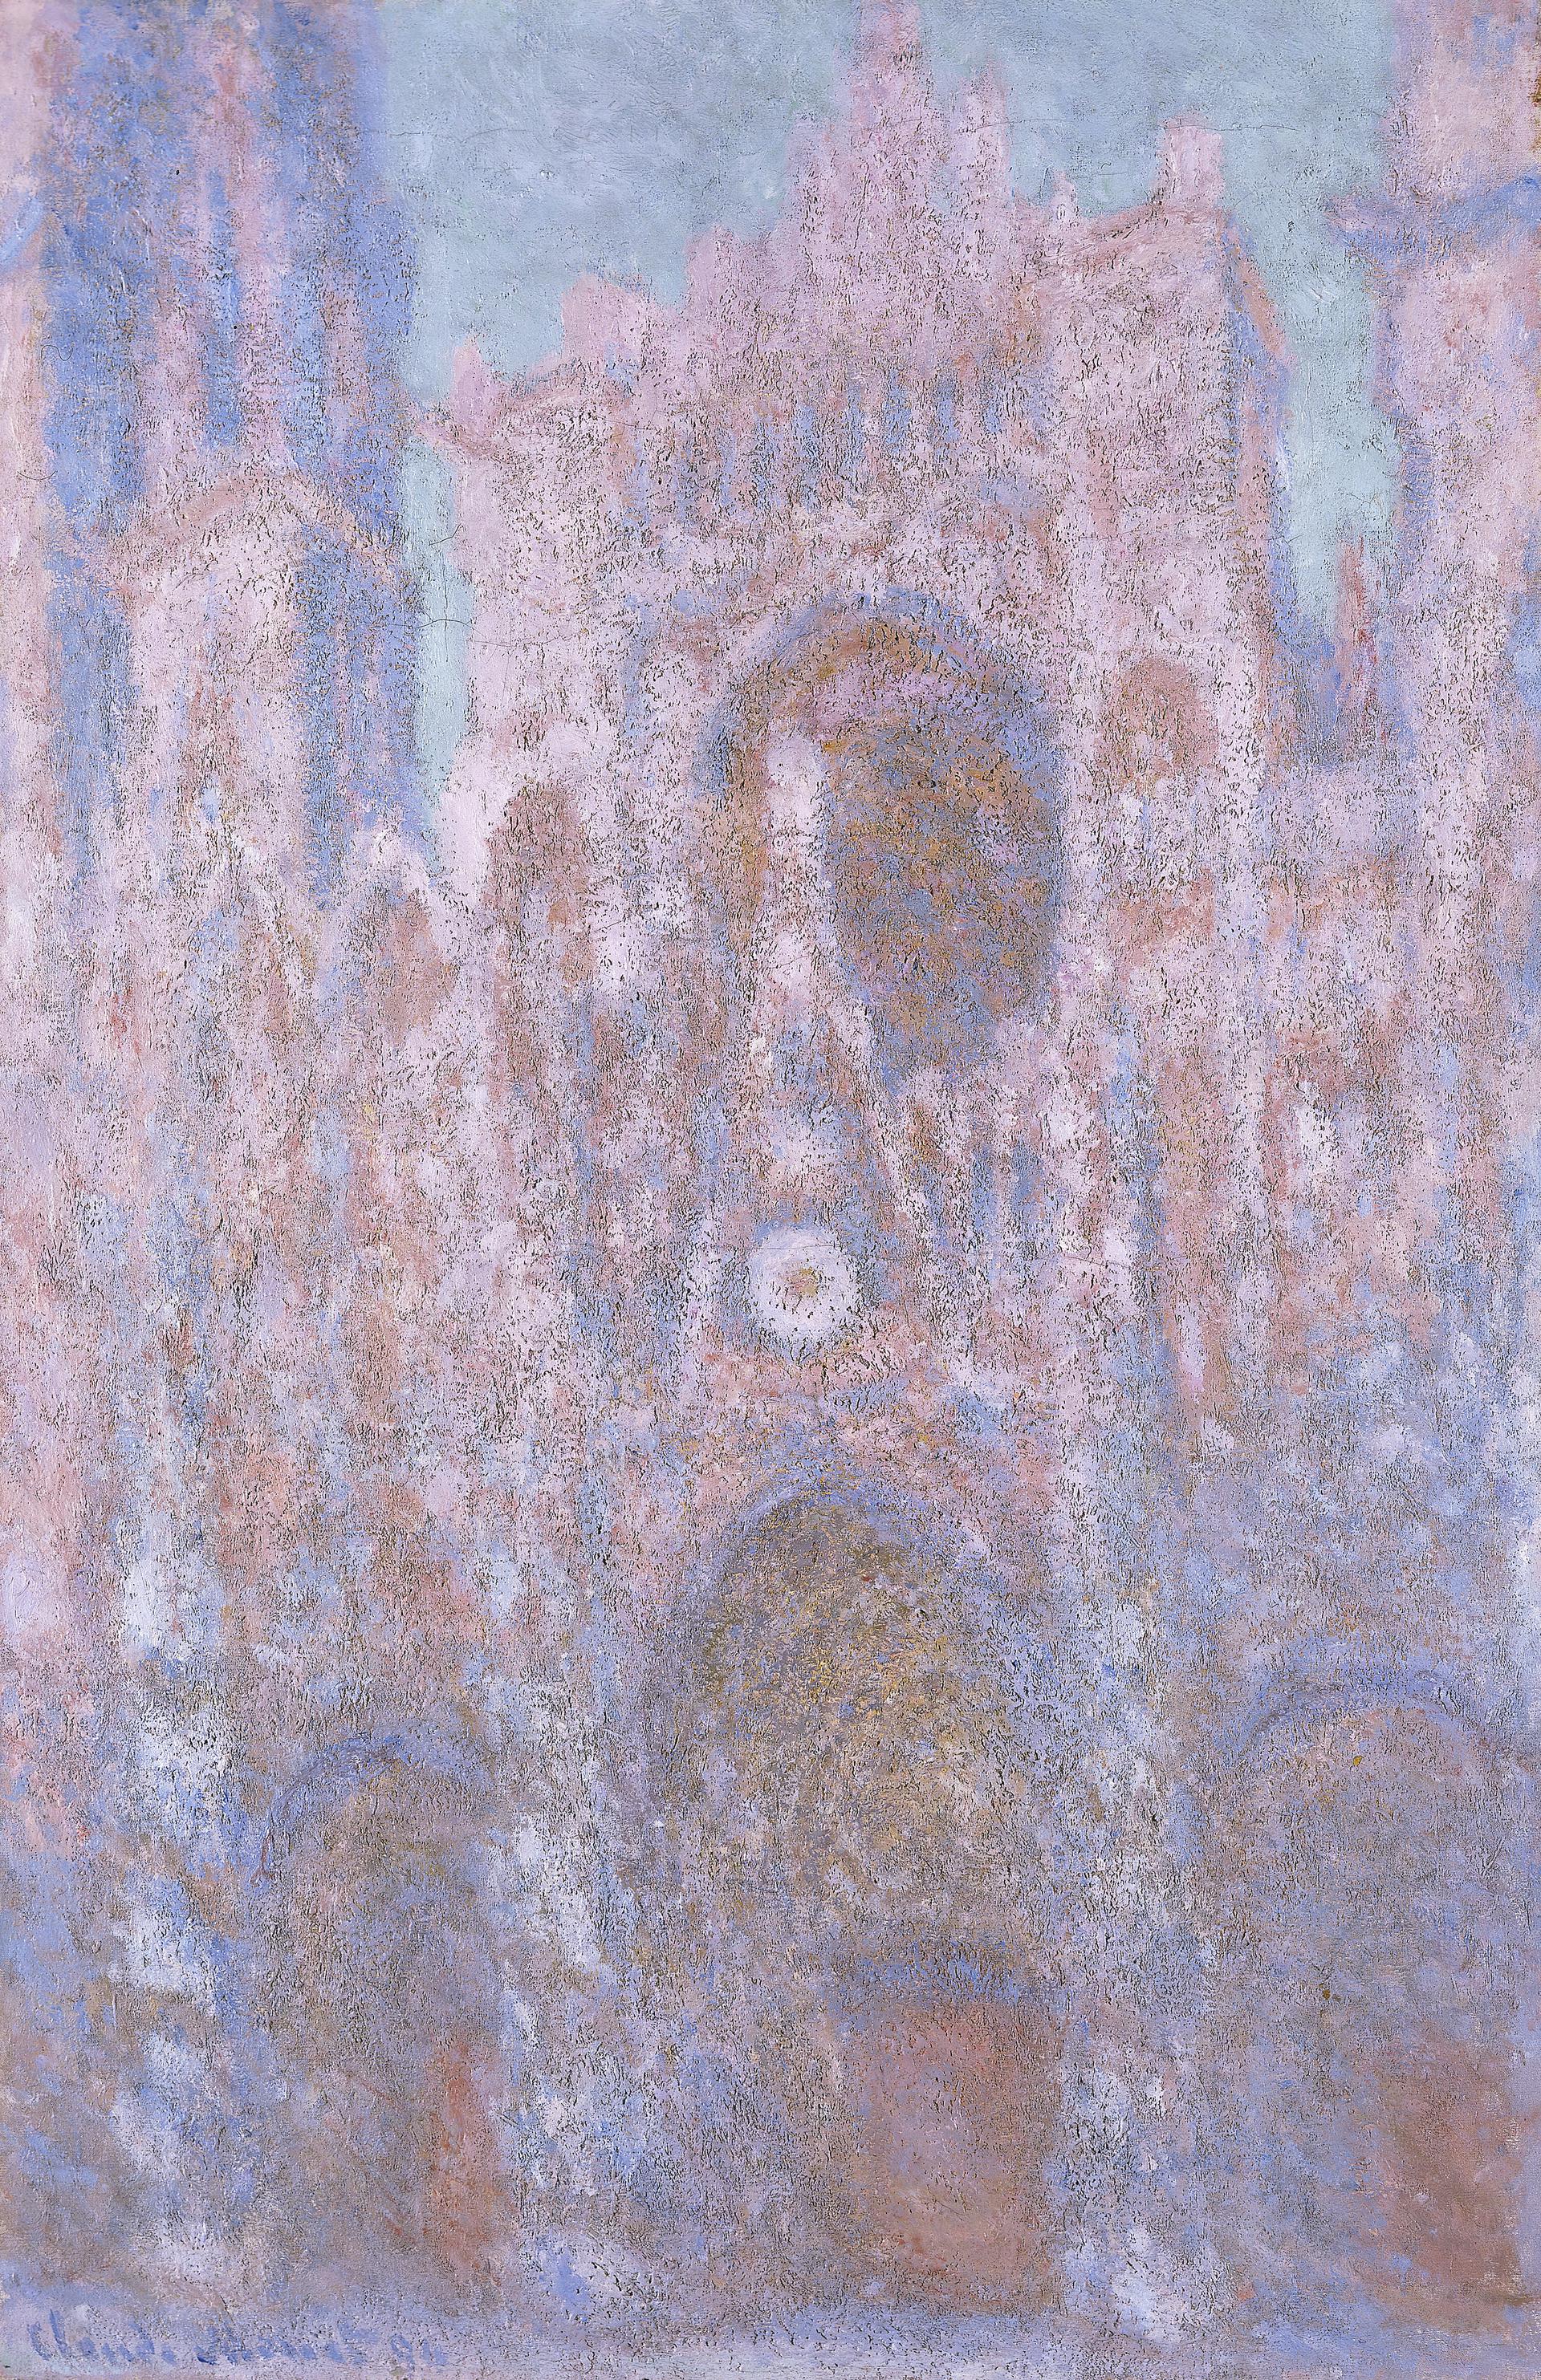 La Cathédrale de Rouen. Symphonie en gris et noir (W1323) - Claude Monet